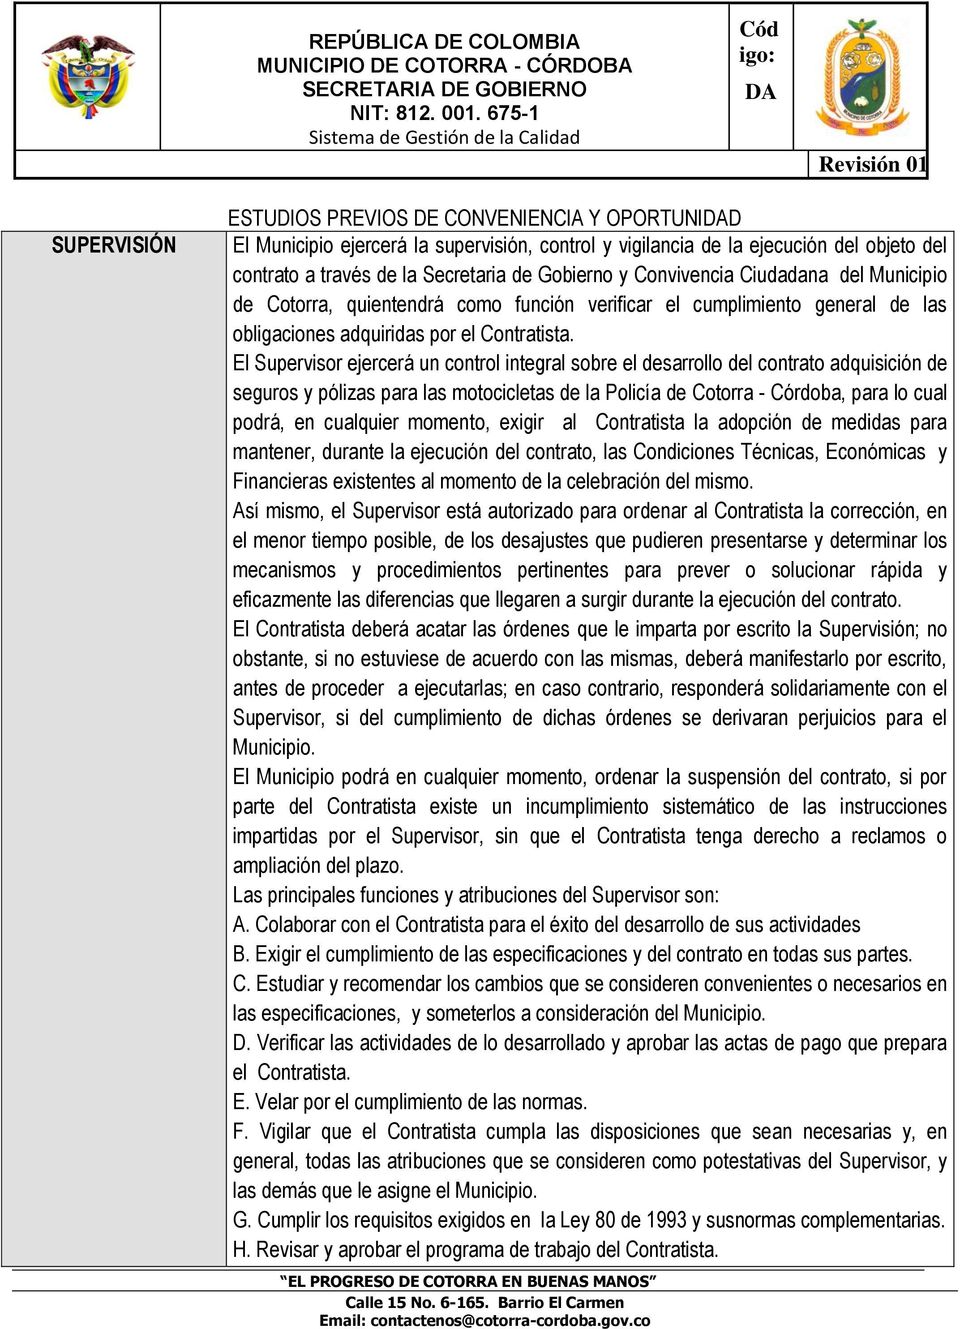 El Supervisor ejercerá un control integral sobre el desarrollo del contrato adquisición de seguros y pólizas para las motocicletas de la Policía de Cotorra - Córdoba, para lo cual podrá, en cualquier